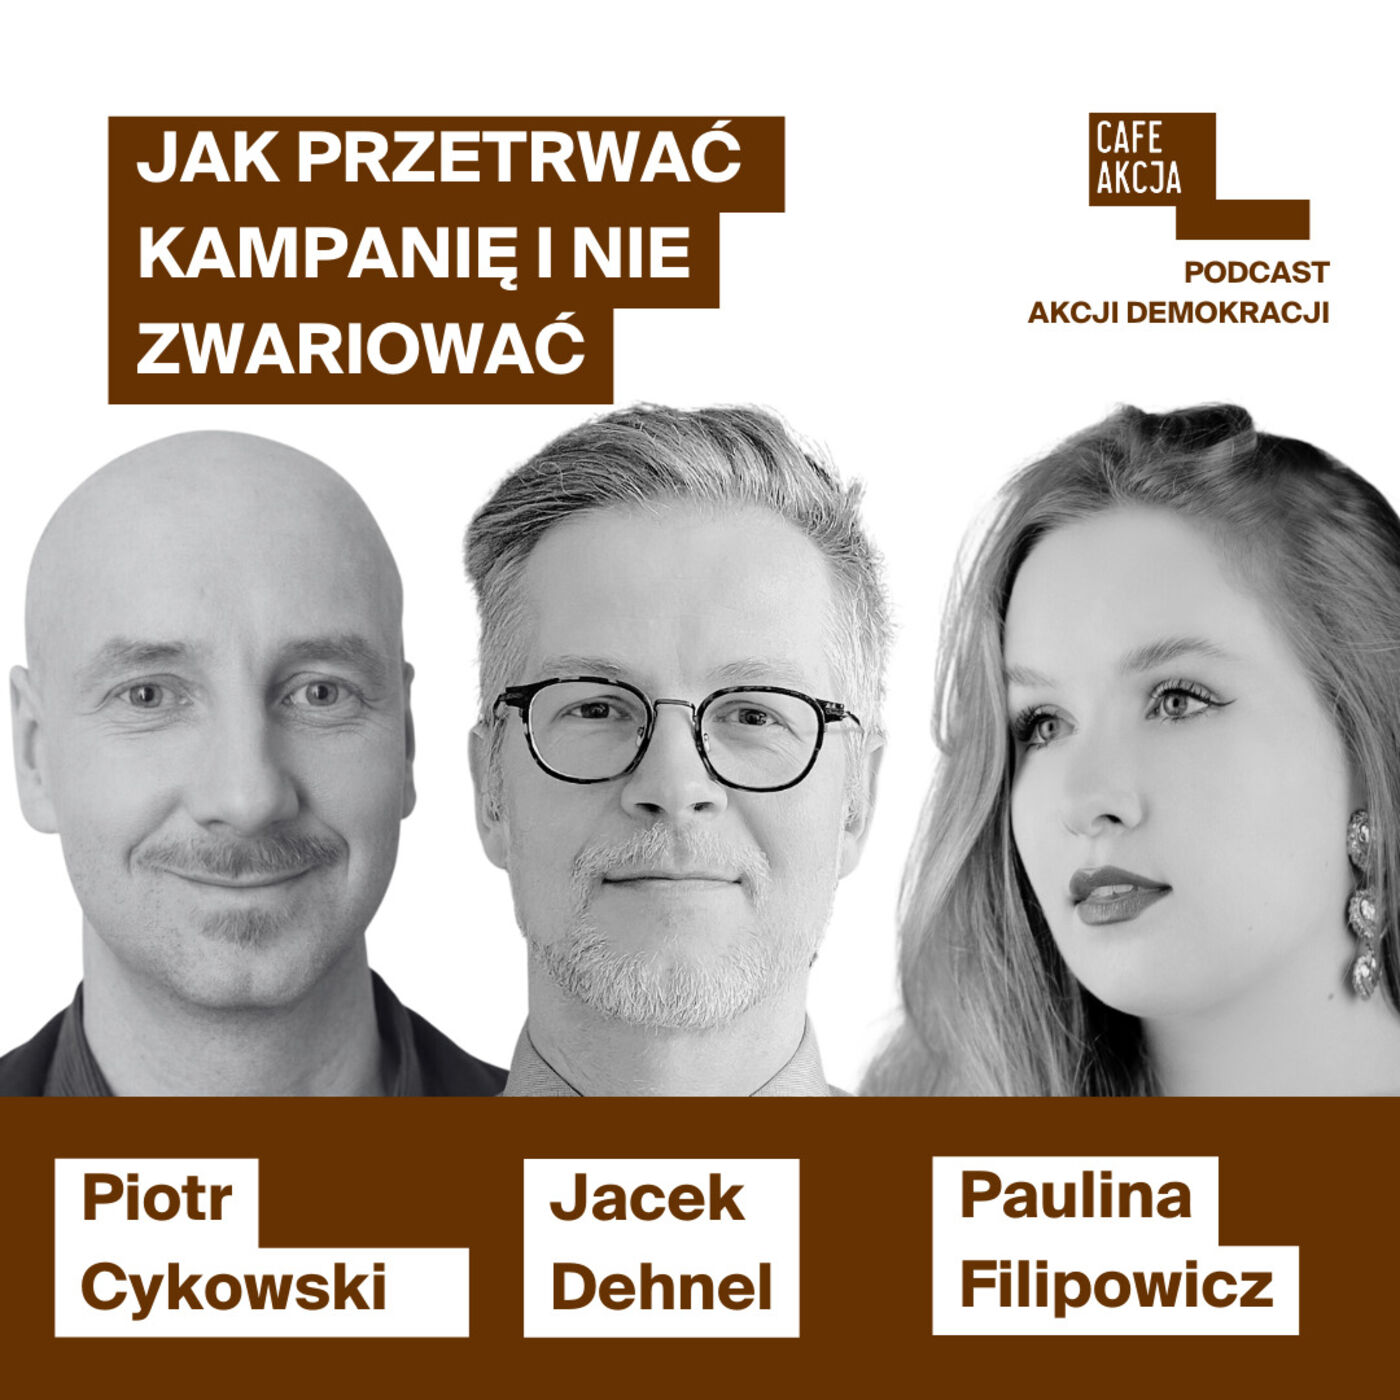 Wybo23: Paulina Filipowicz (KO) i Jacek Dehnel (L) - jak przetrwać wybory i nie zwariować